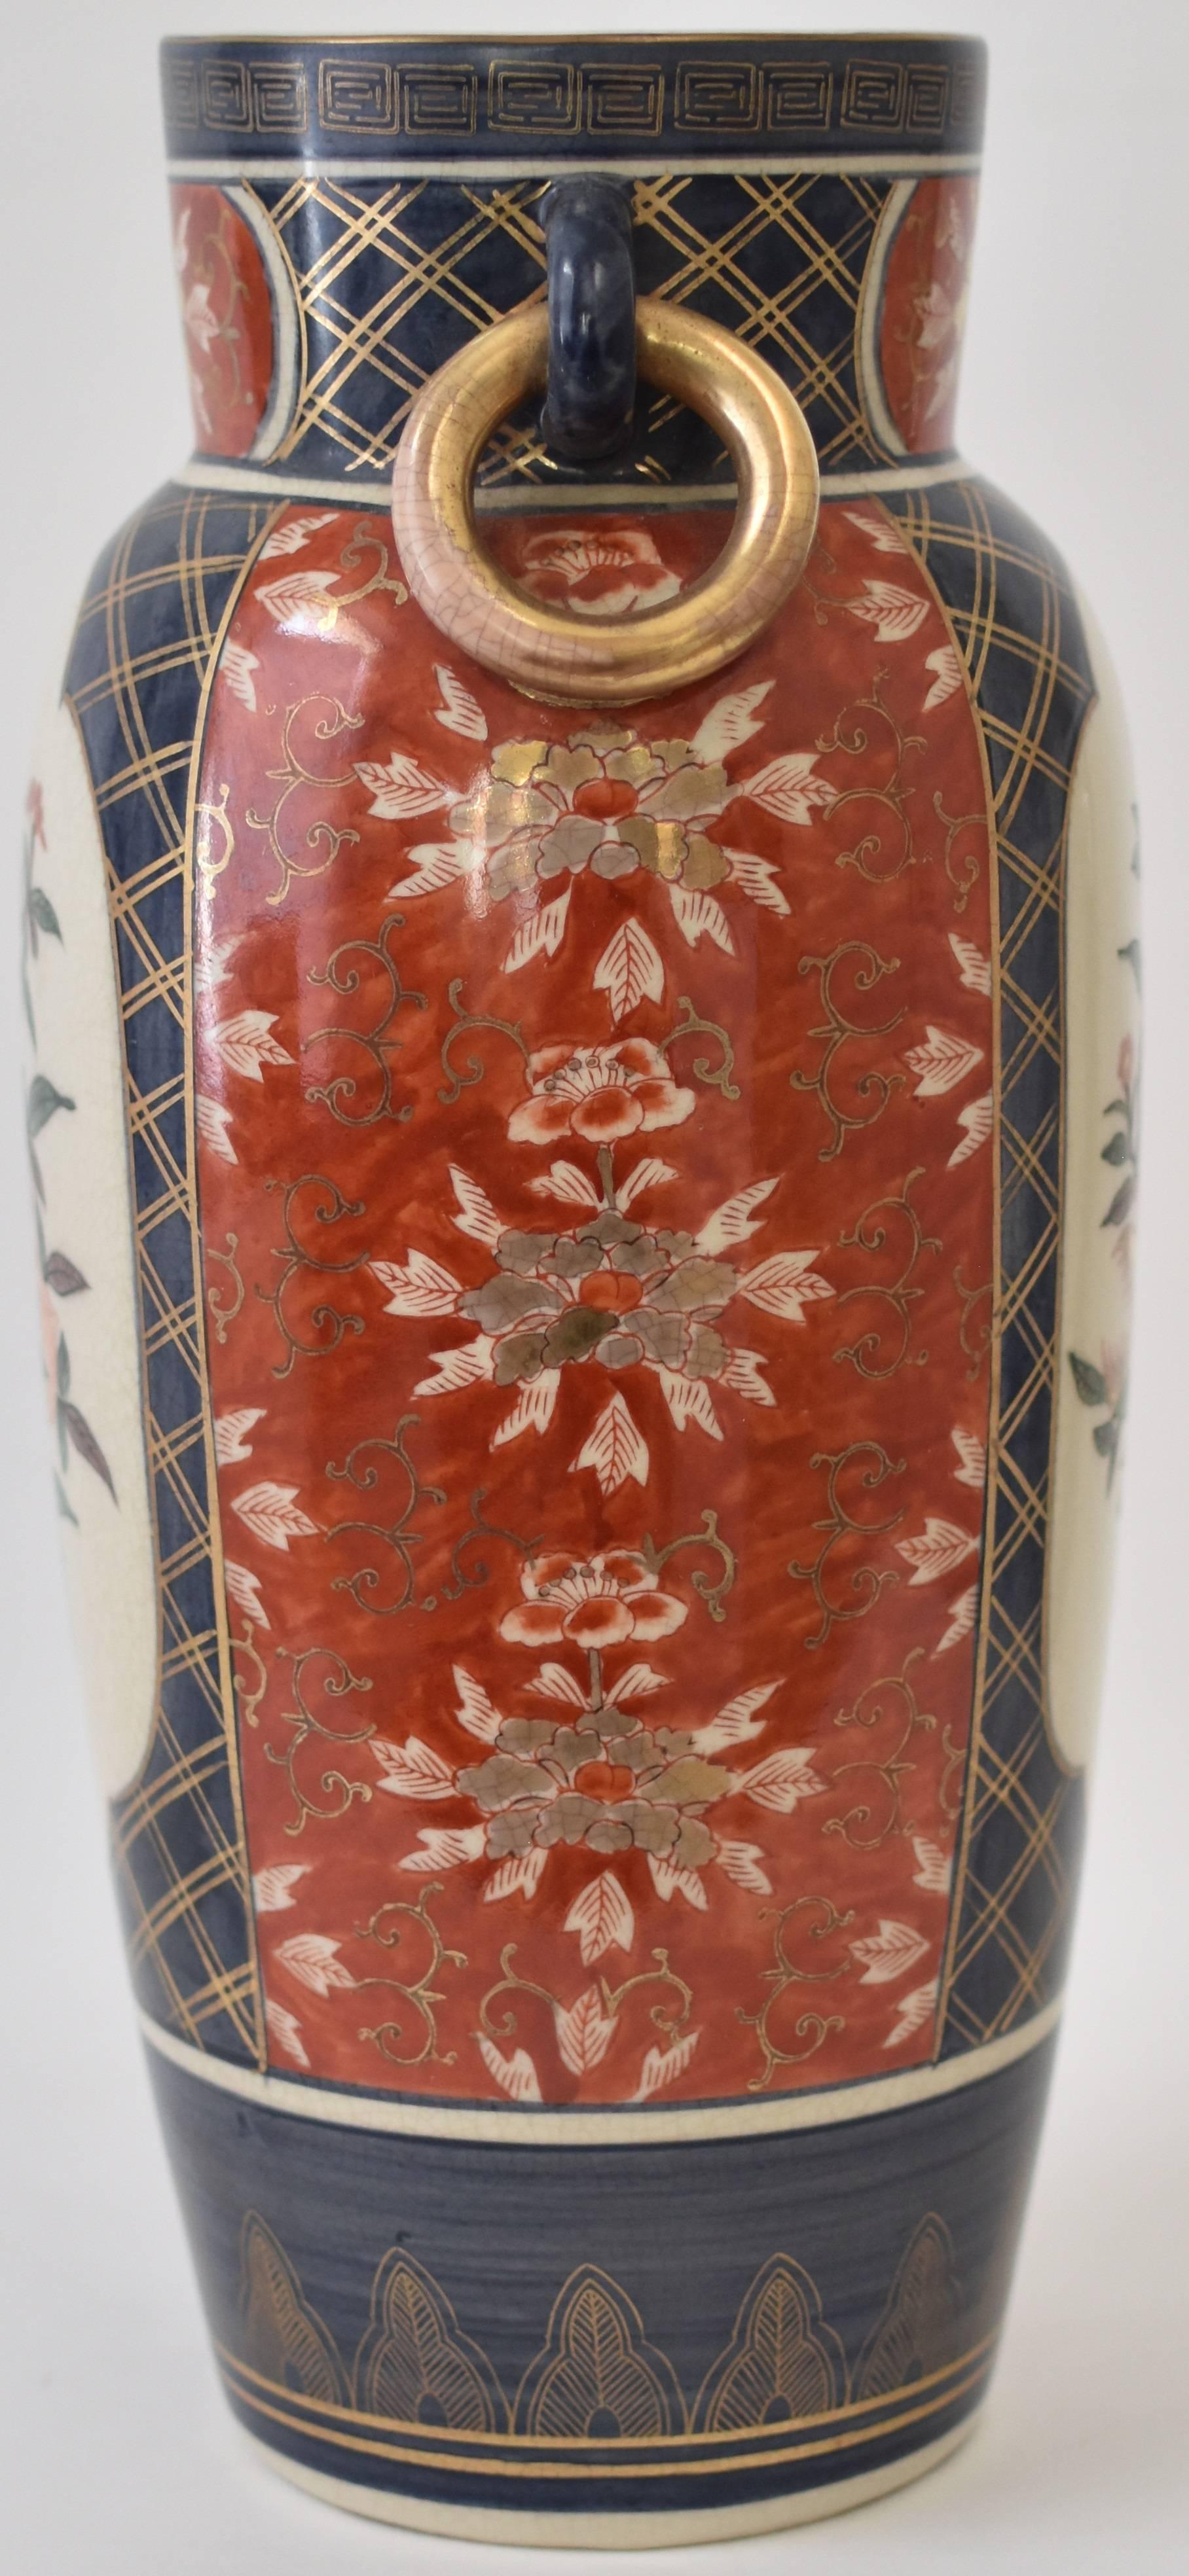 Die zeitgenössische japanische Porzellanvase mit vergoldeten Ringgriffen zeigt traditionelle Imari-Blumenmotive vor einem feinen Craquelé-Glasur-Hintergrund auf einem schön geformten Porzellankörper.

Auf den beiden mit Wellenschliff versehenen